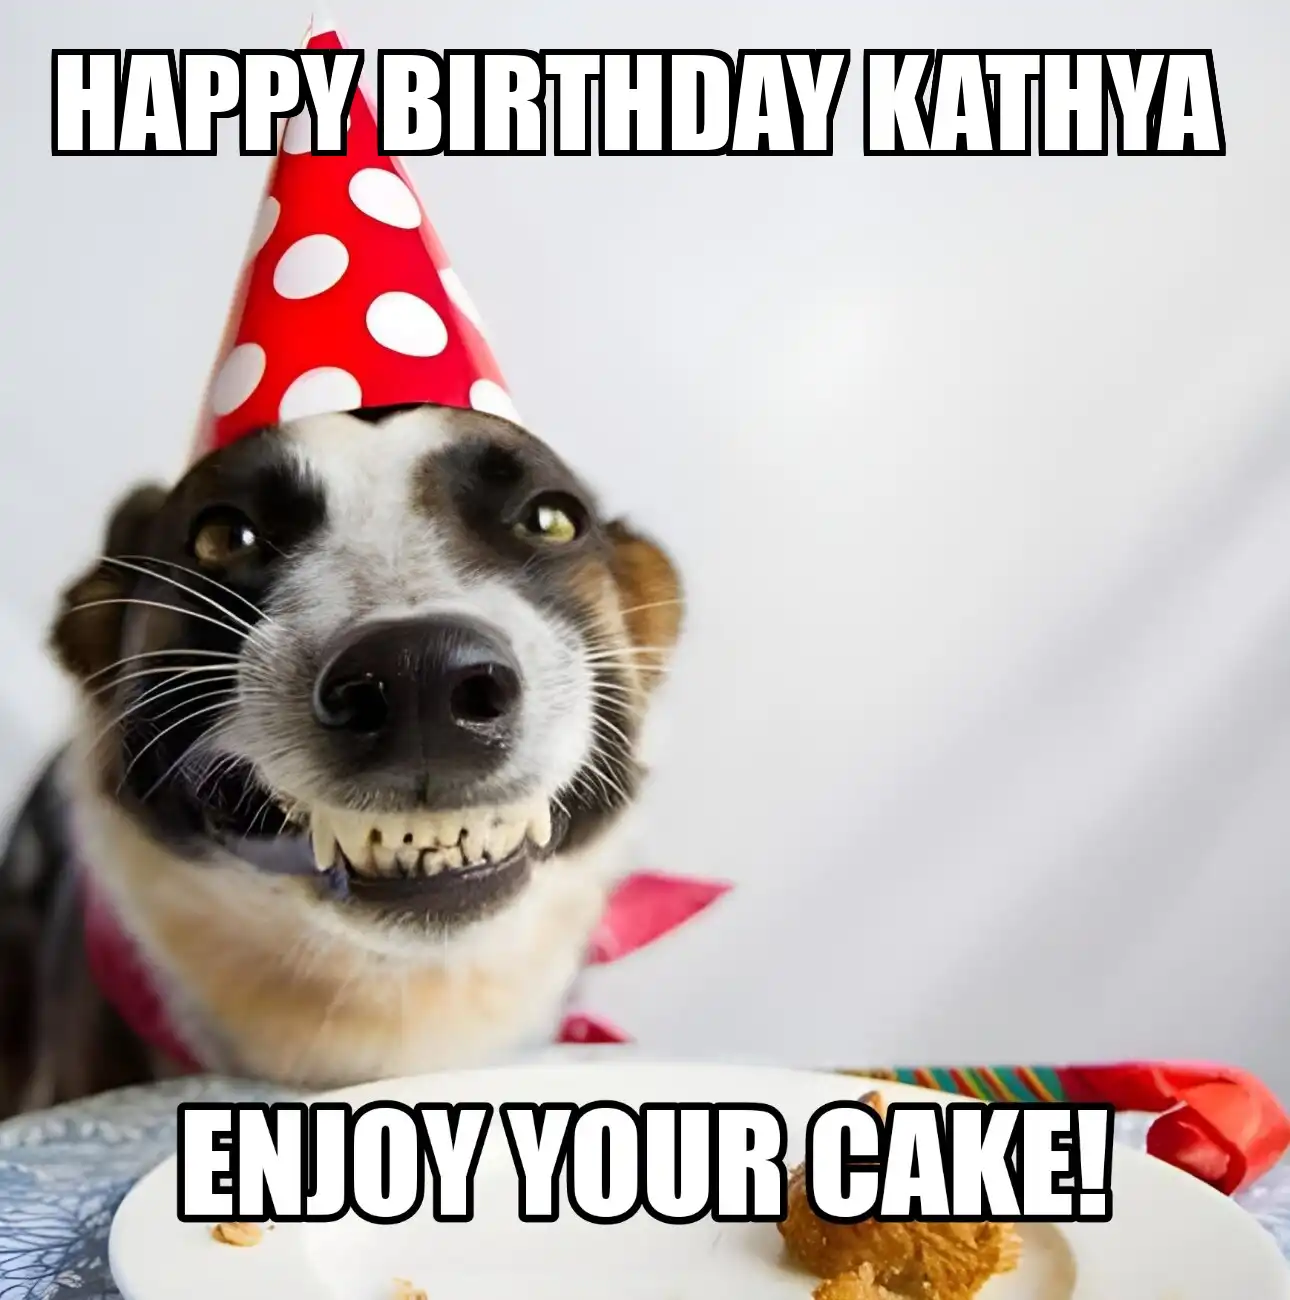 Happy Birthday Kathya Enjoy Your Cake Dog Meme